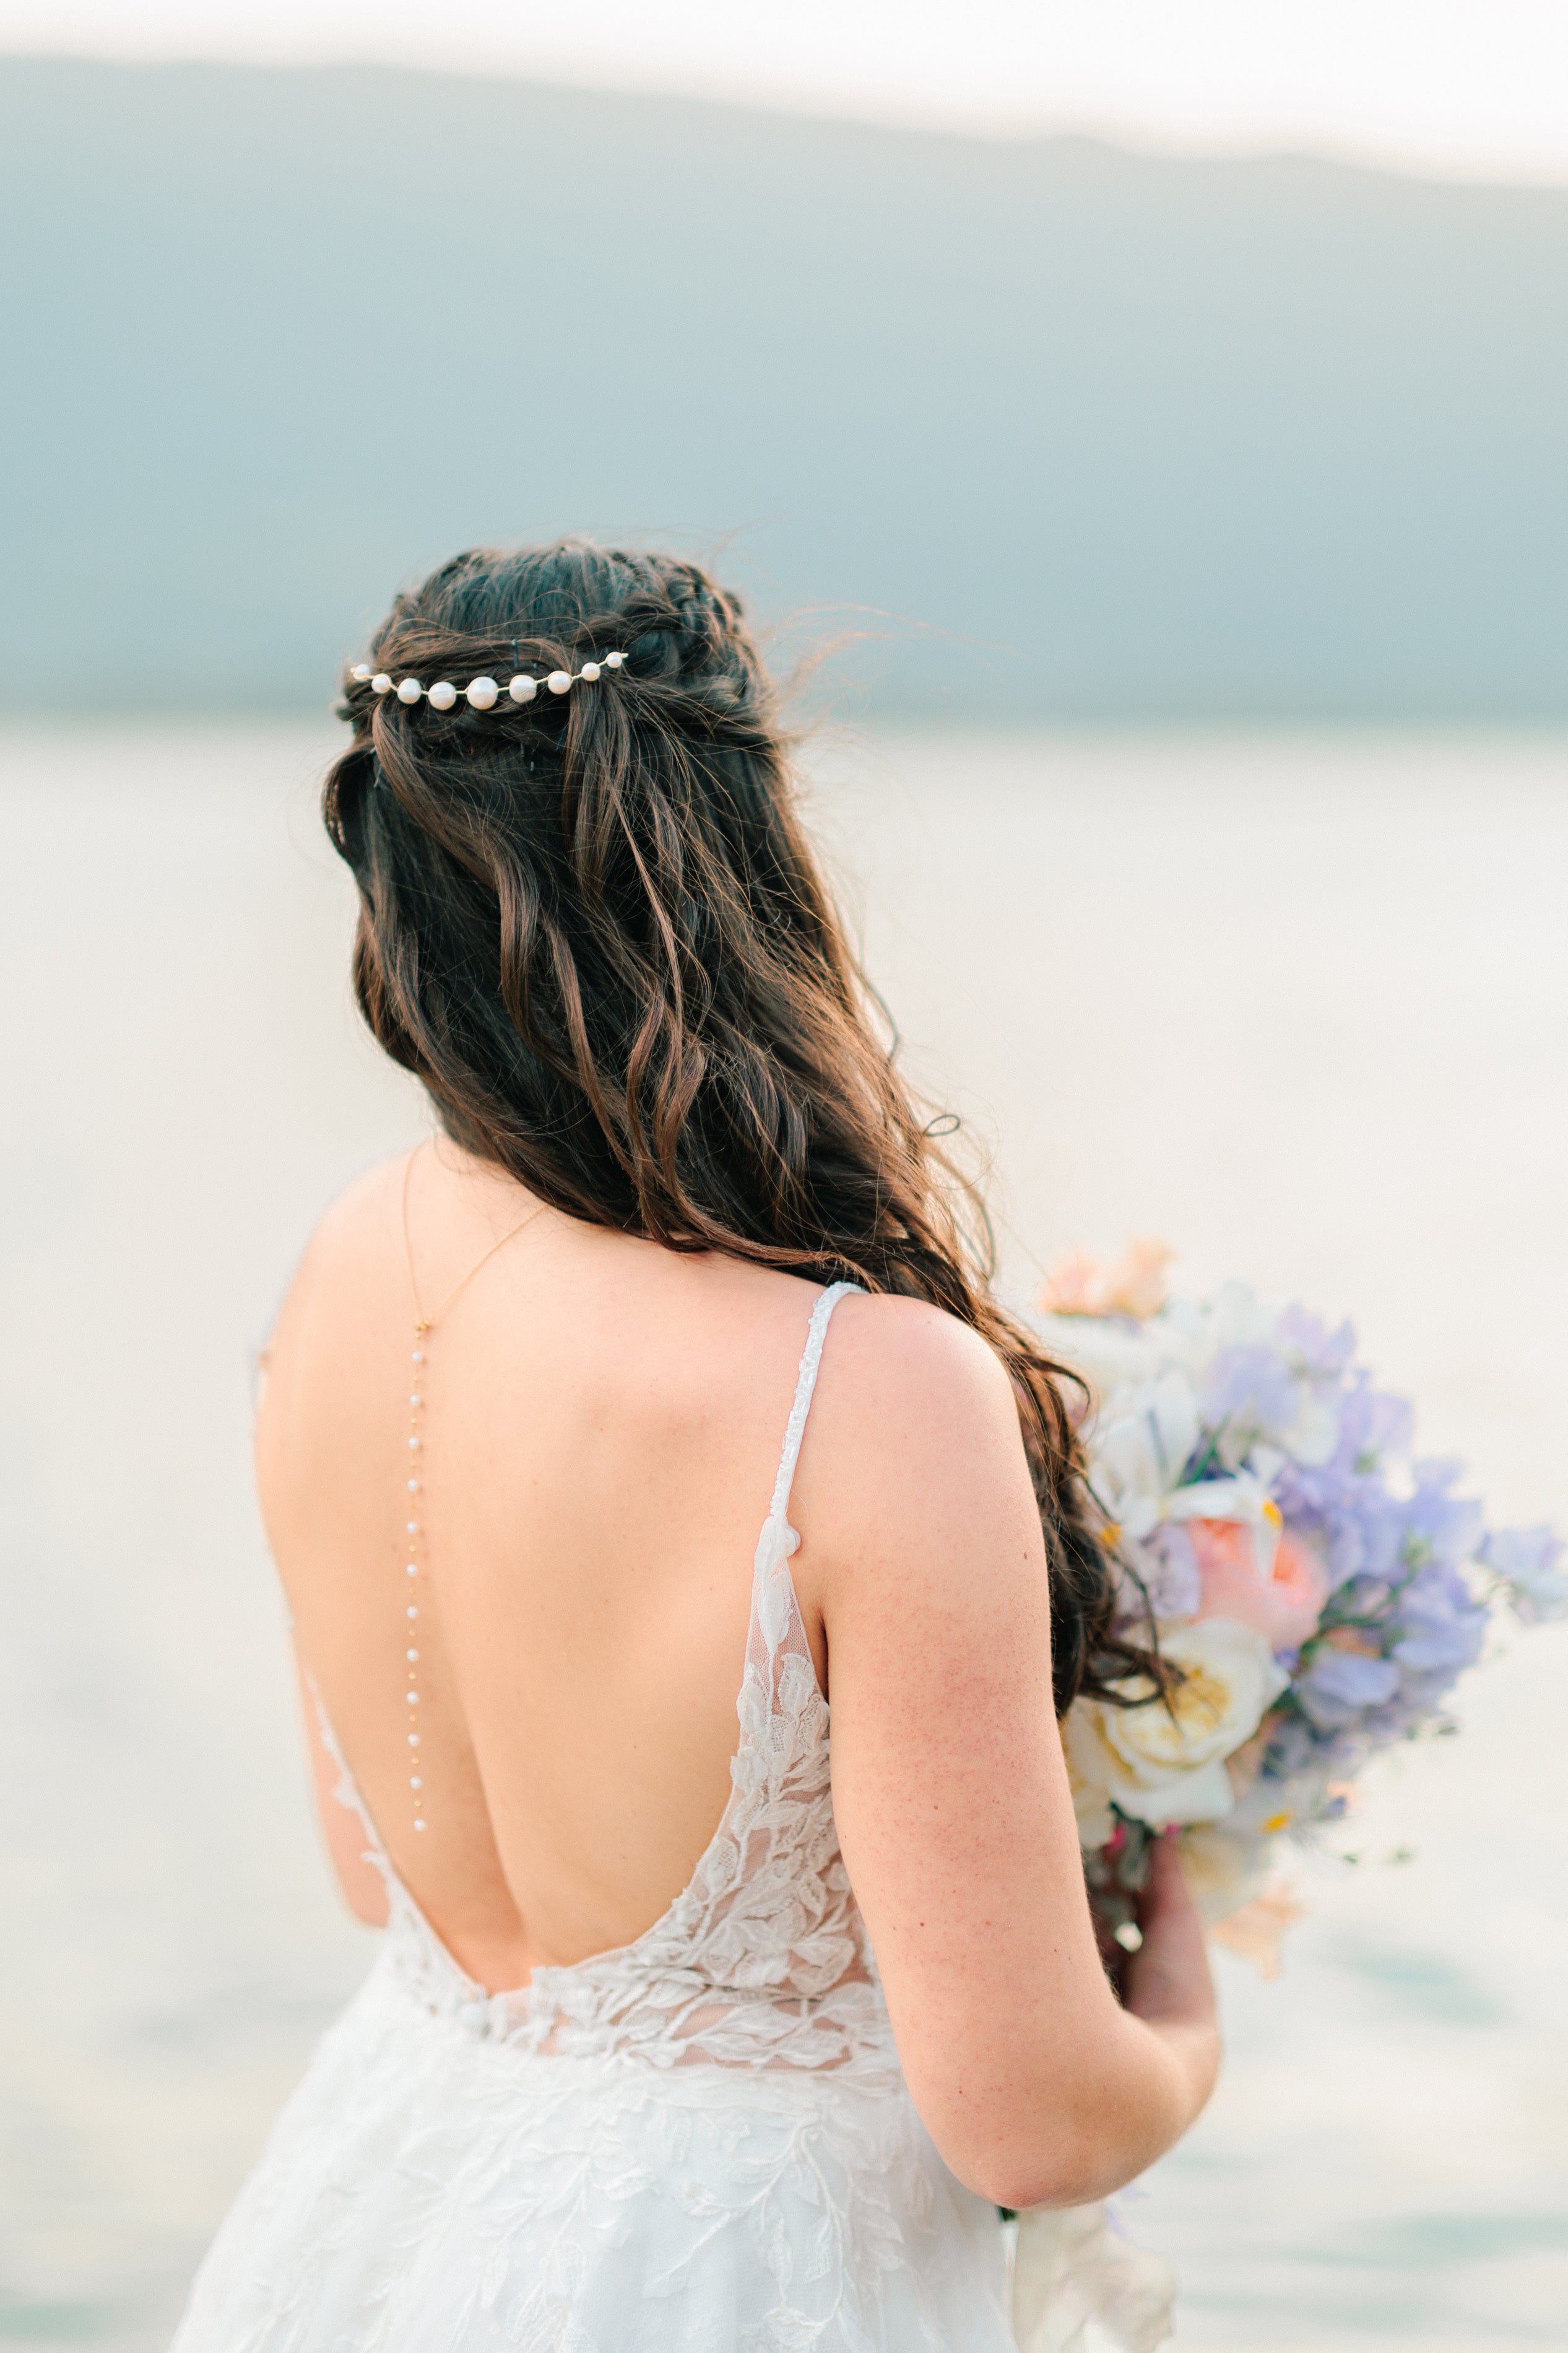 photo prise au lac d'Annecy pour un mariage avec des bijoux en perles nature, un peigne et un collier de dos